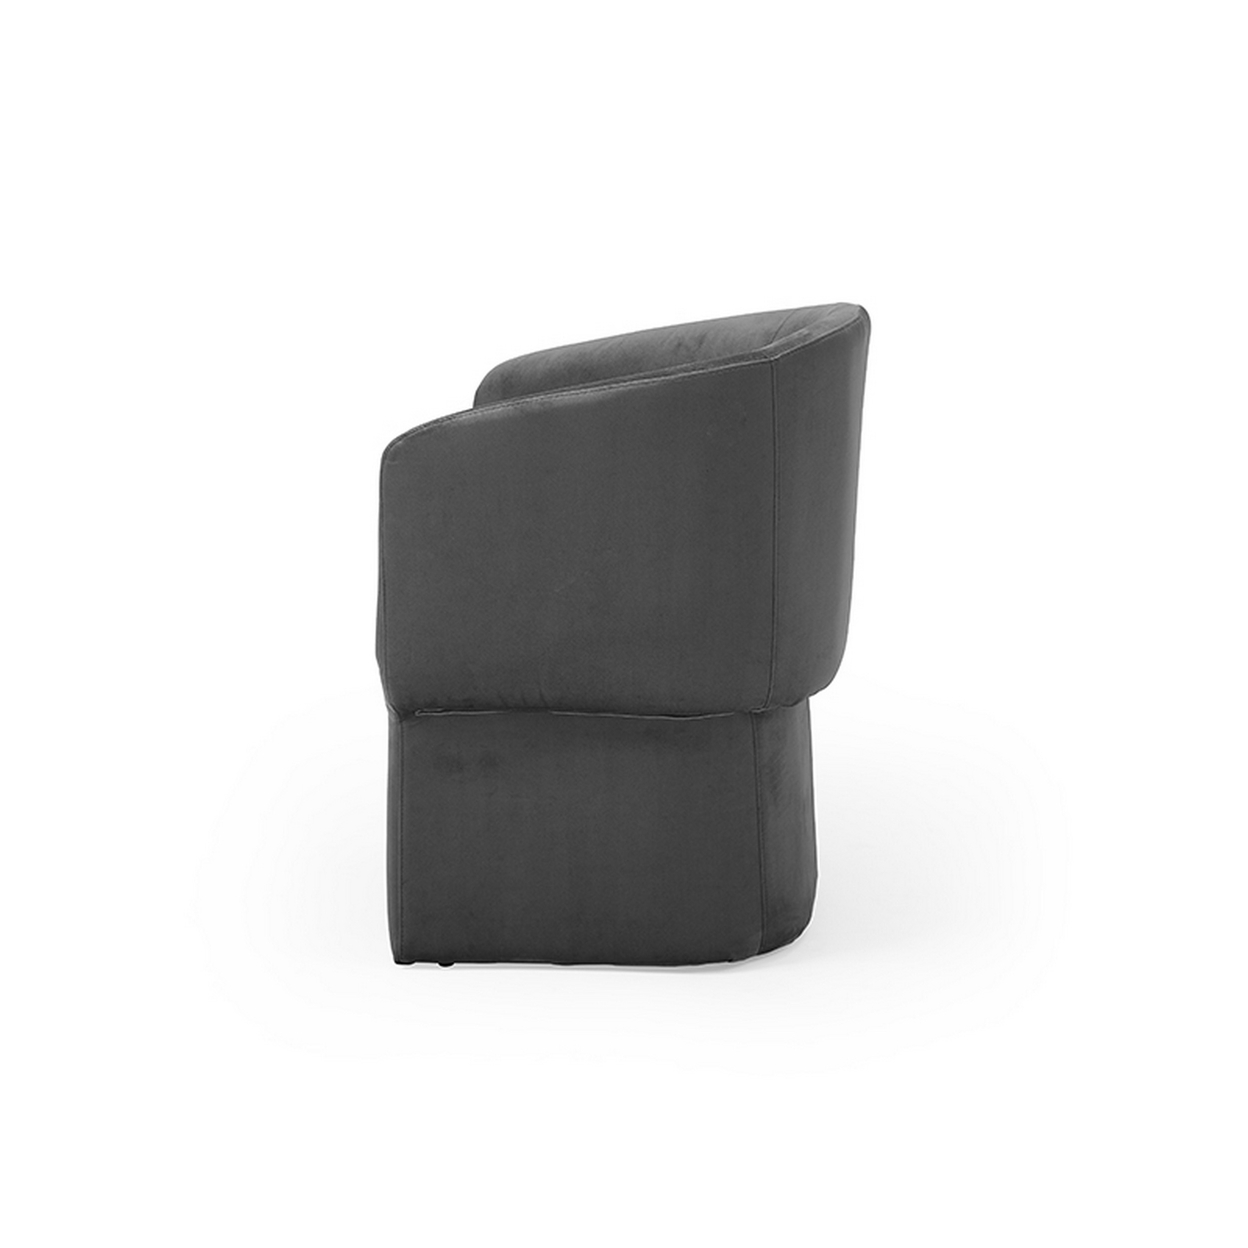 26 Inch Modern Dining Chair, Dark Gray Velvet Fabric, Curved Backrest - Saltoro Sherpi